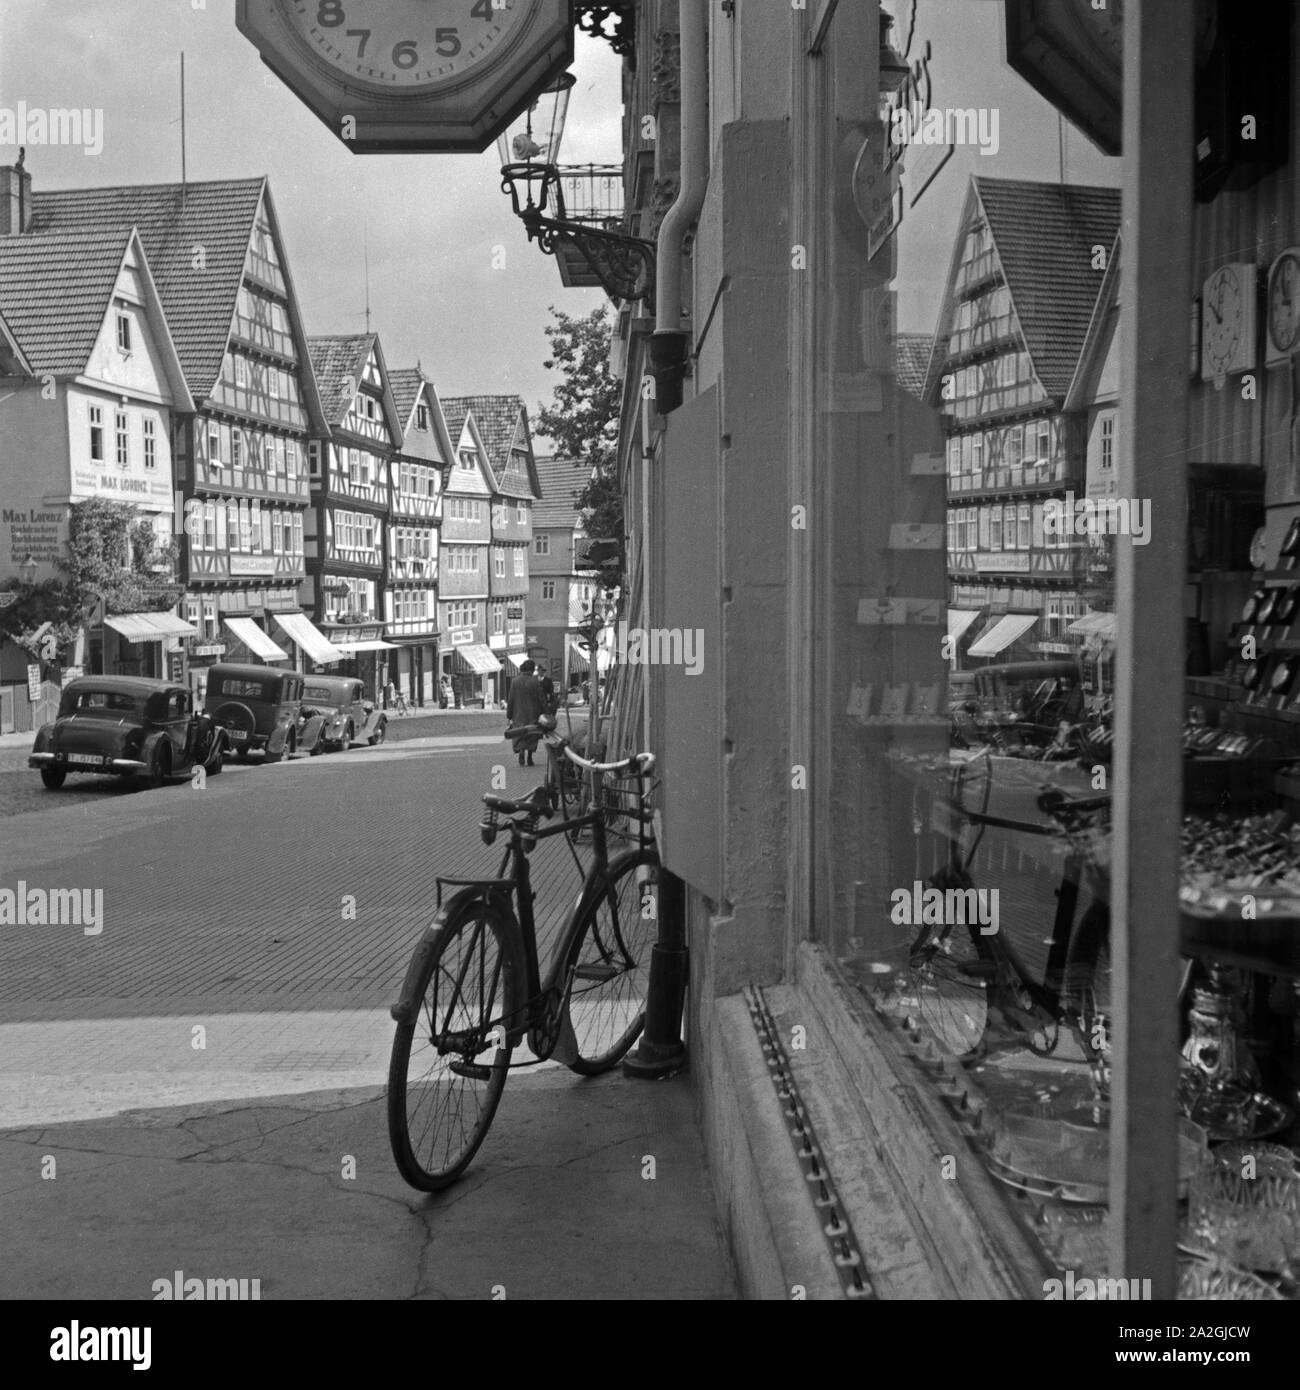 Häuser und eine Straße spiegeln sich im-Schaufenster eines Uhren- und Haushaltwarengeschäfts in Bad Wildungen, Deutschland 1930er Jahre. Häuser und eine Straße in das Fenster einer Uhr und Haushalt hardware Shop in Bad Wildungen, Deutschland der 1930er Jahre widerspiegelt. Stockfoto